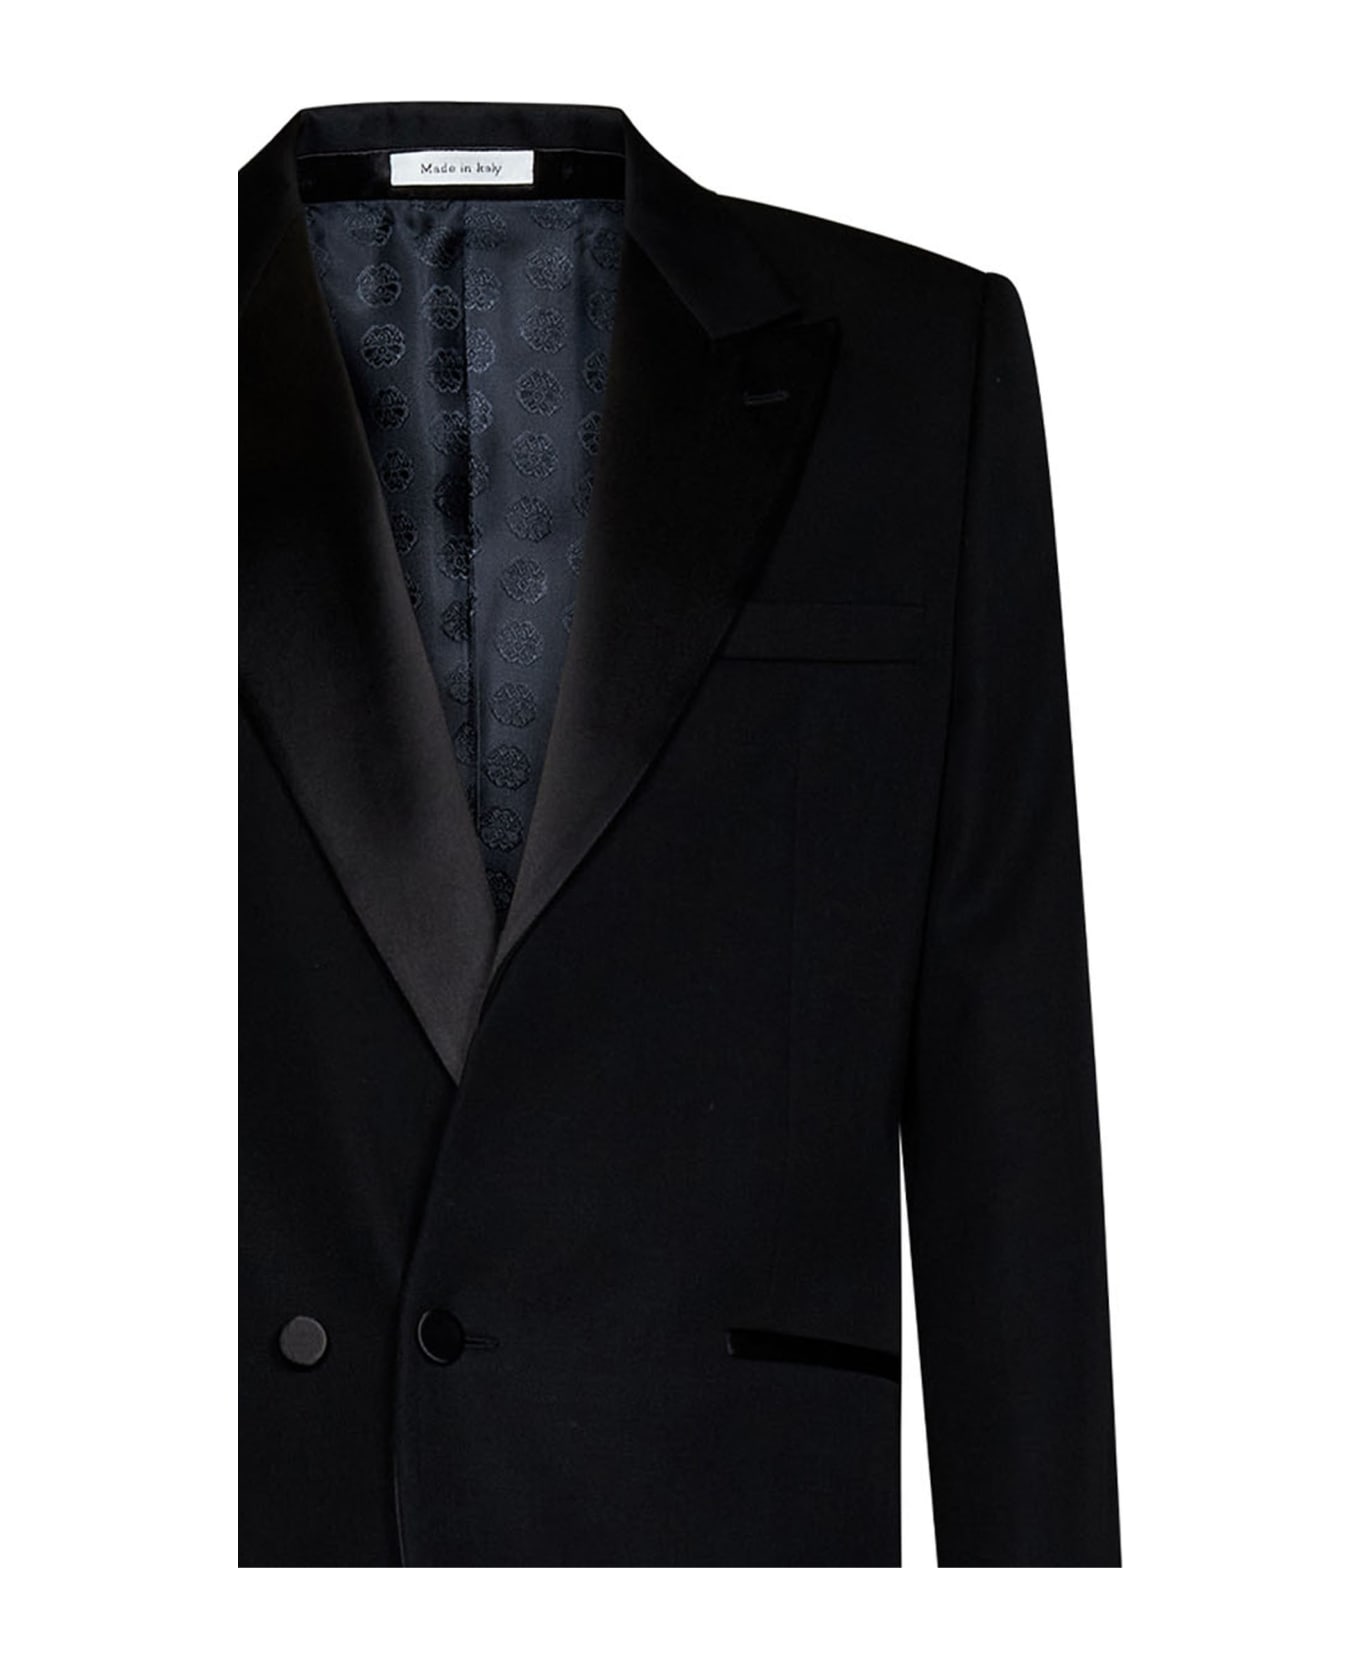 Alexander McQueen Suit - Black